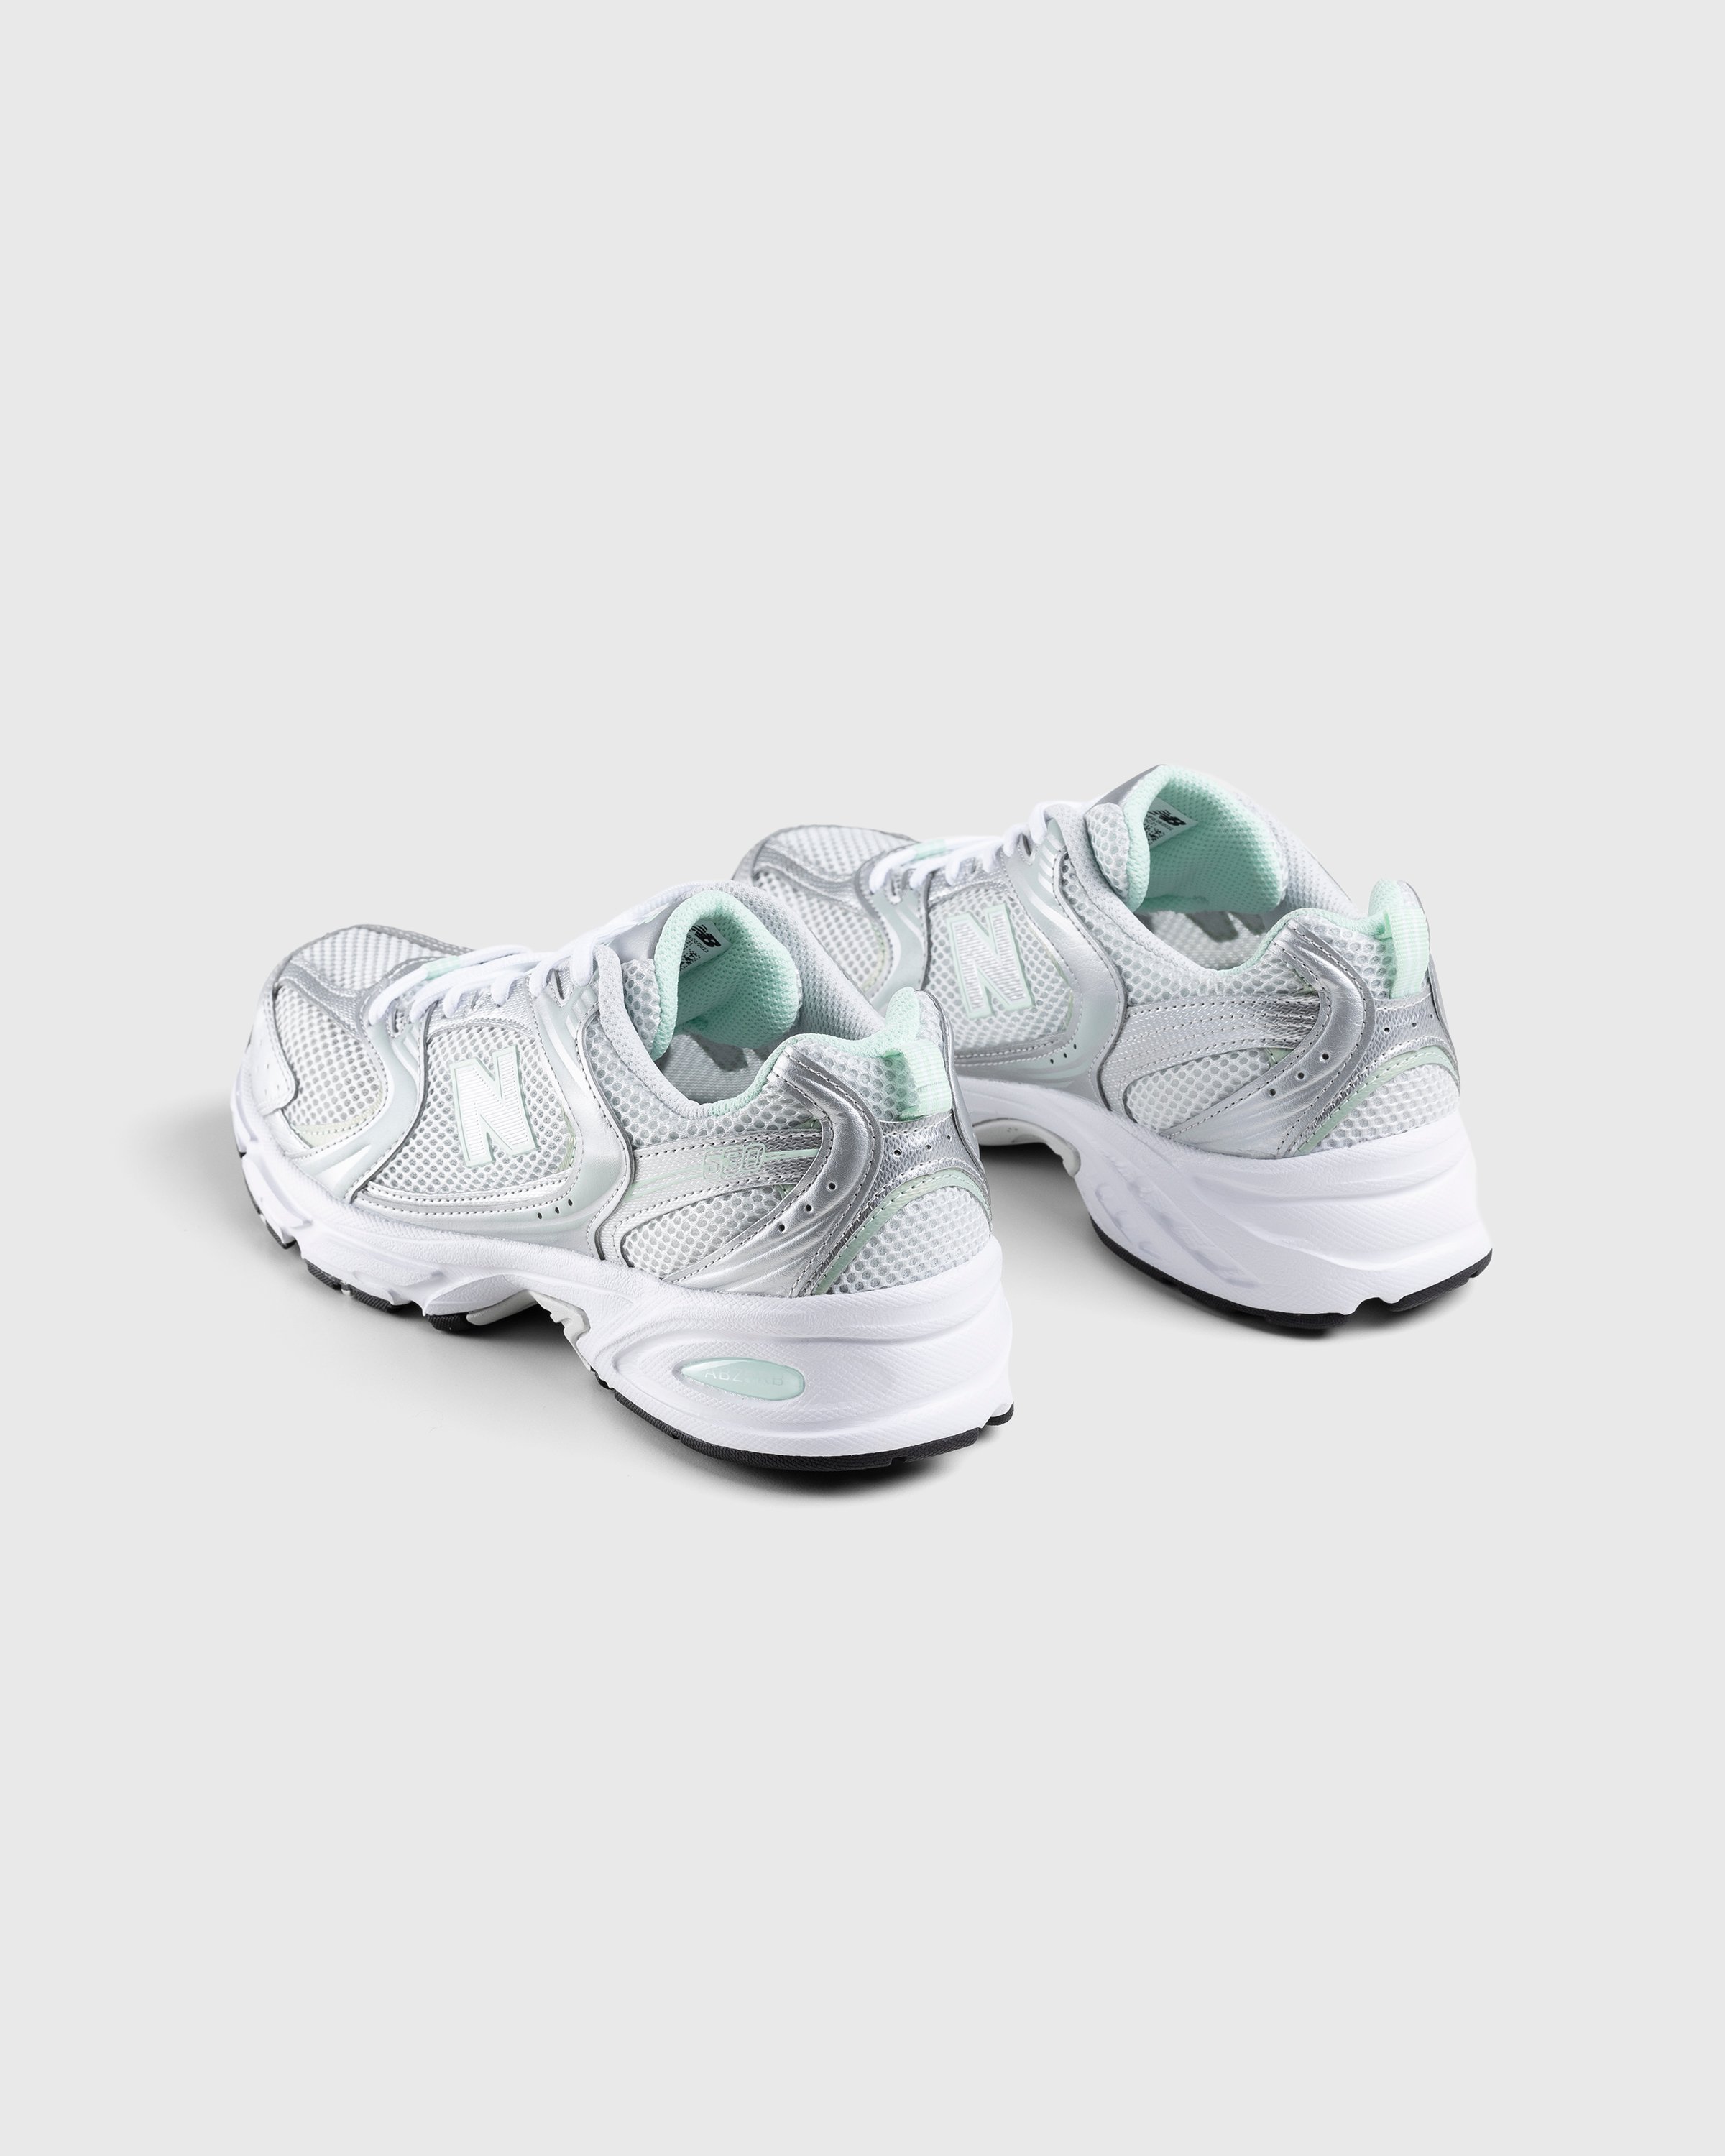 New Balance - MR530ZEL Cosmic Jade - Footwear - Silver - Image 4